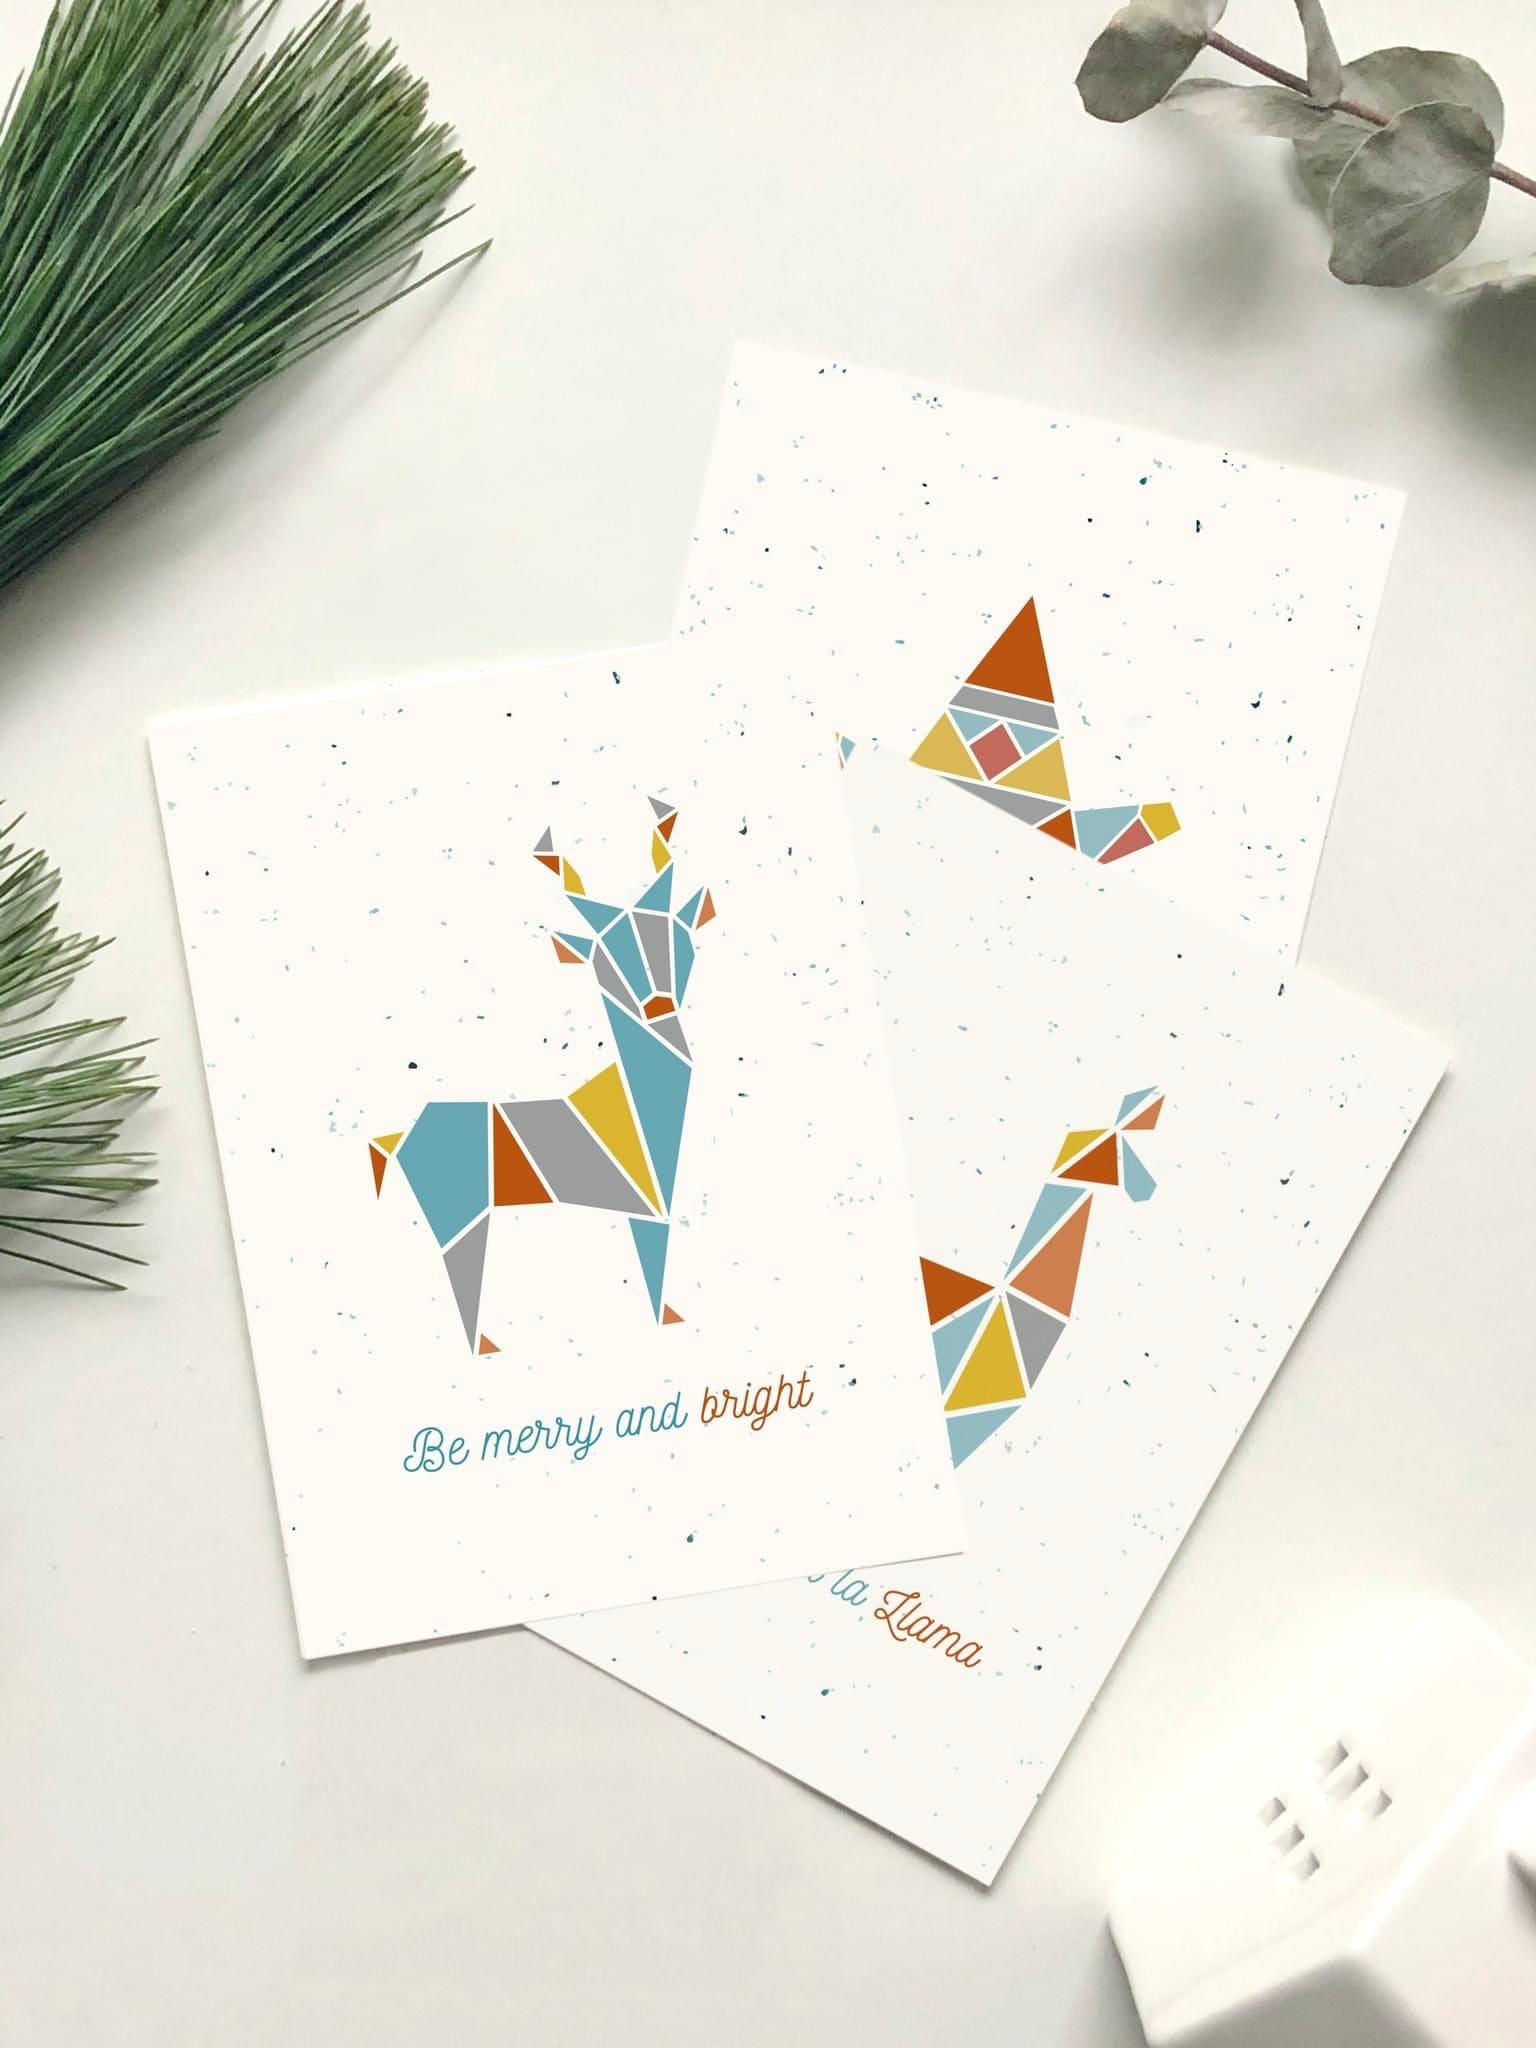 Postkarten Set „Weihnachten“, color blocking